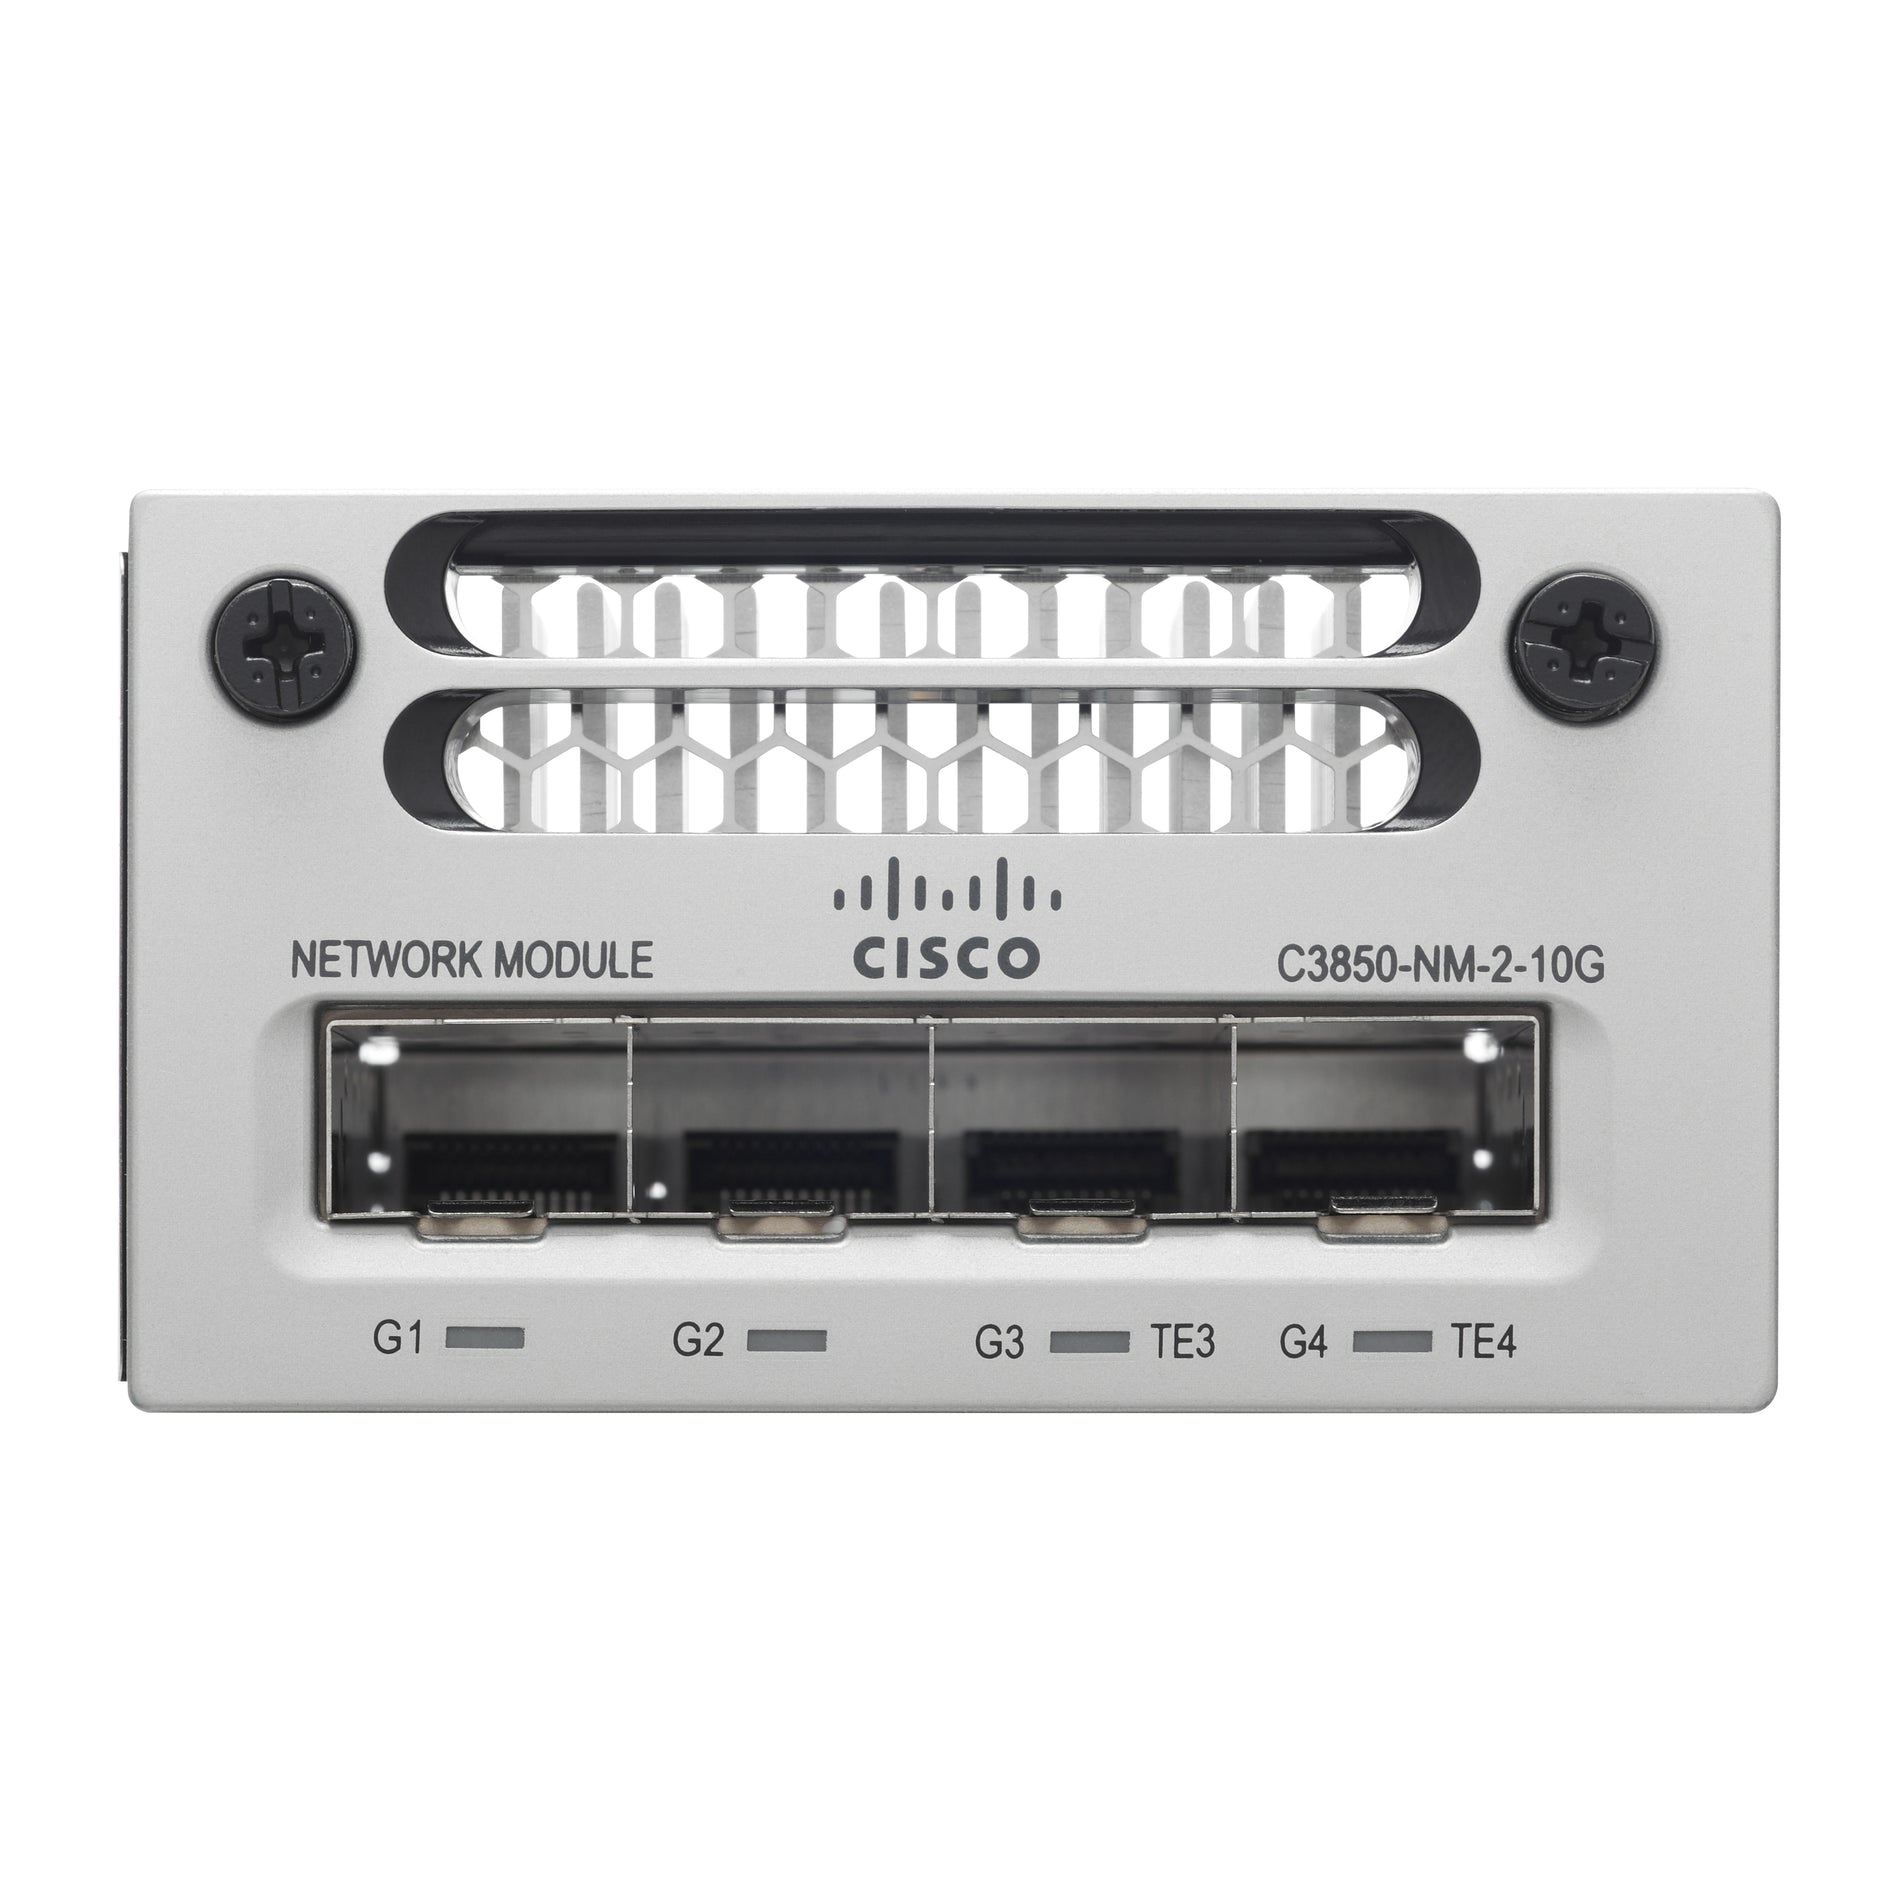 Cisco C3850-NM-2-10G Network Module - 4 x Expansion Slots